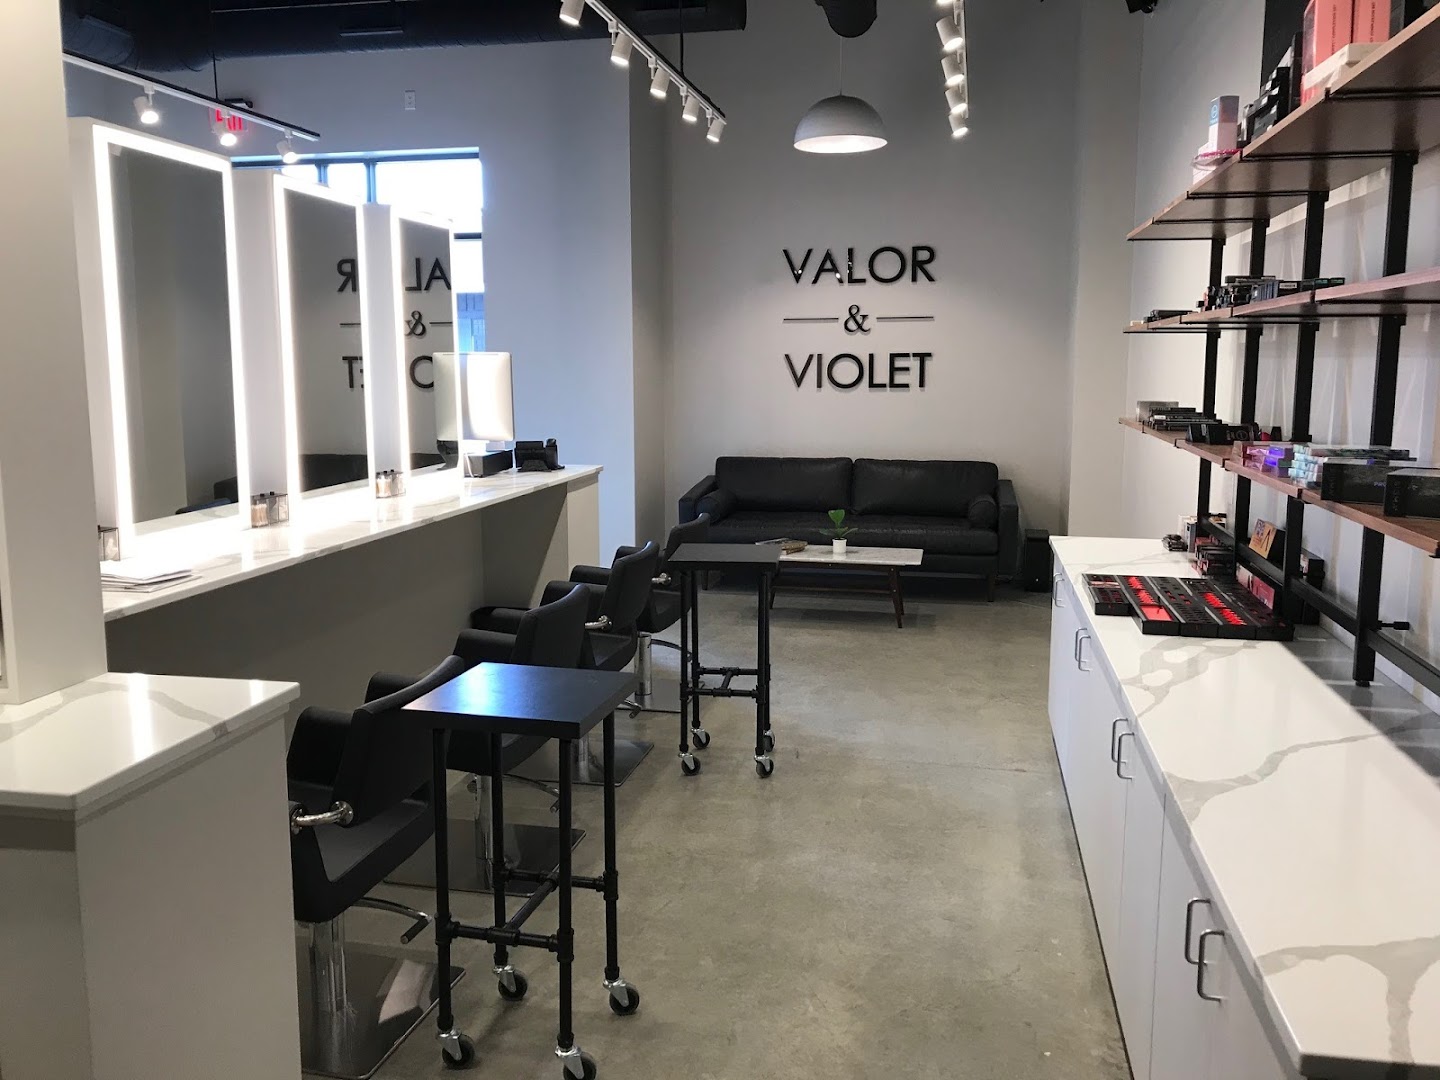 Valor & Violet Salon